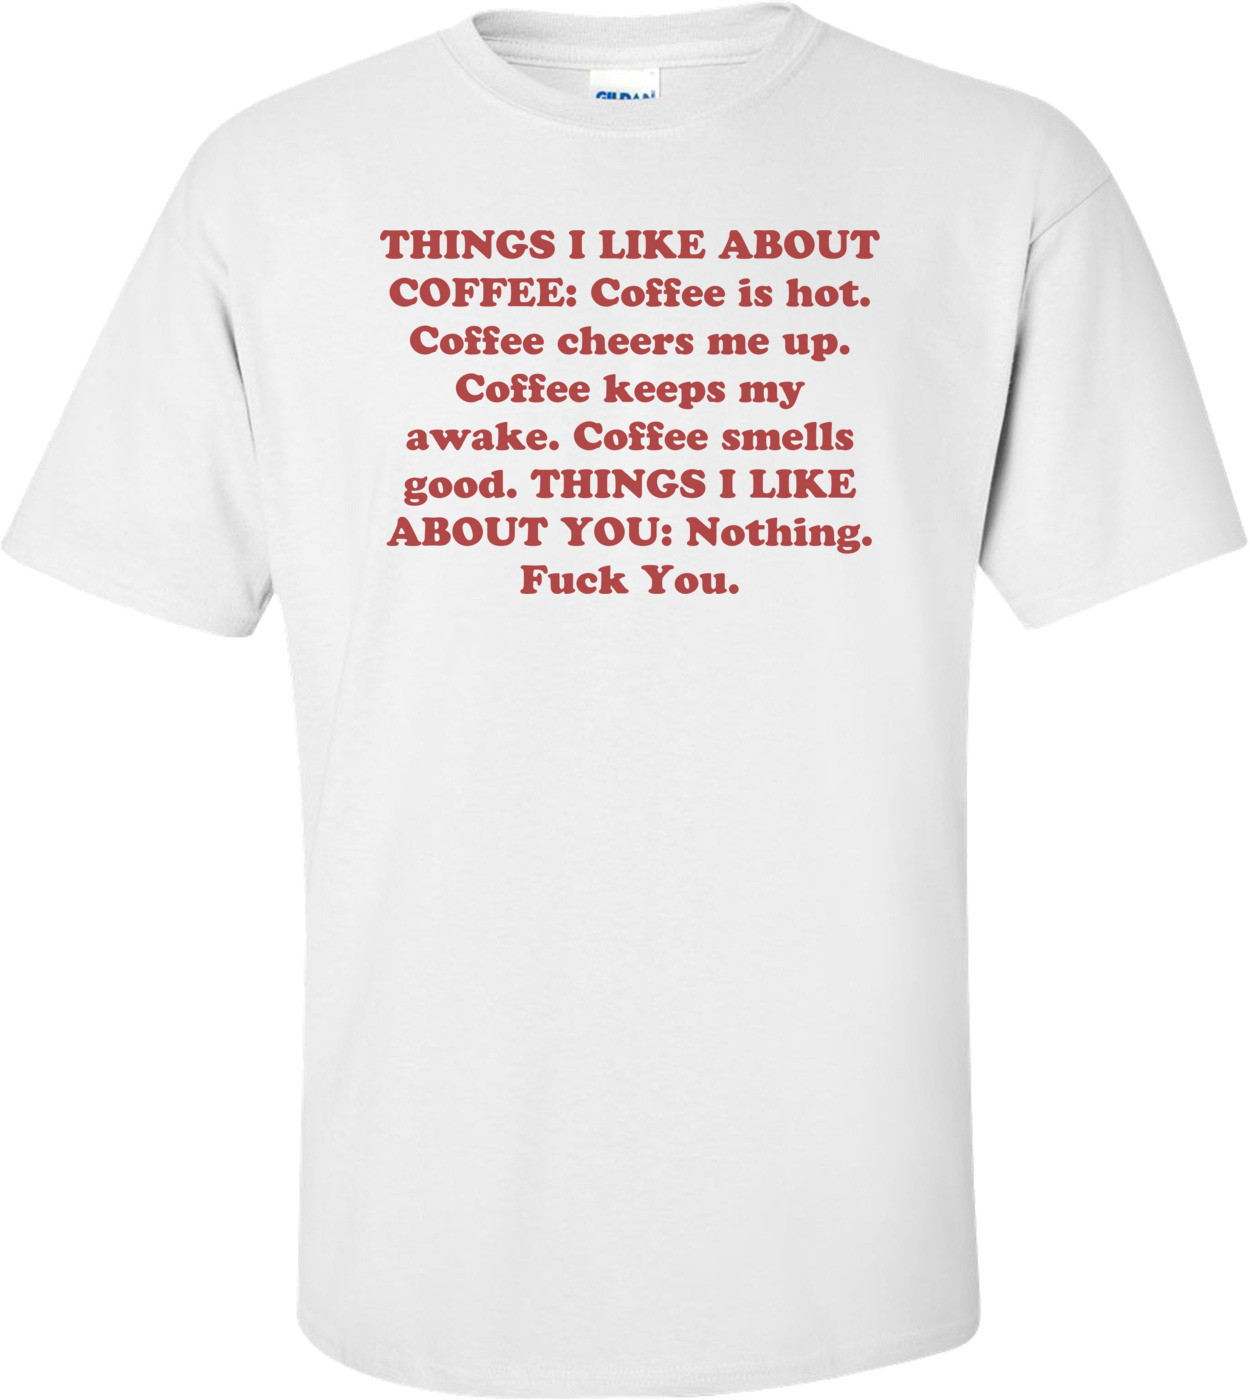 THINGS I LIKE ABOUT COFFEE: Coffee is hot. Coffee cheers me up. Coffee keeps my awake. Coffee smells good. THINGS I LIKE ABOUT YOU: Nothing. Fuck You.